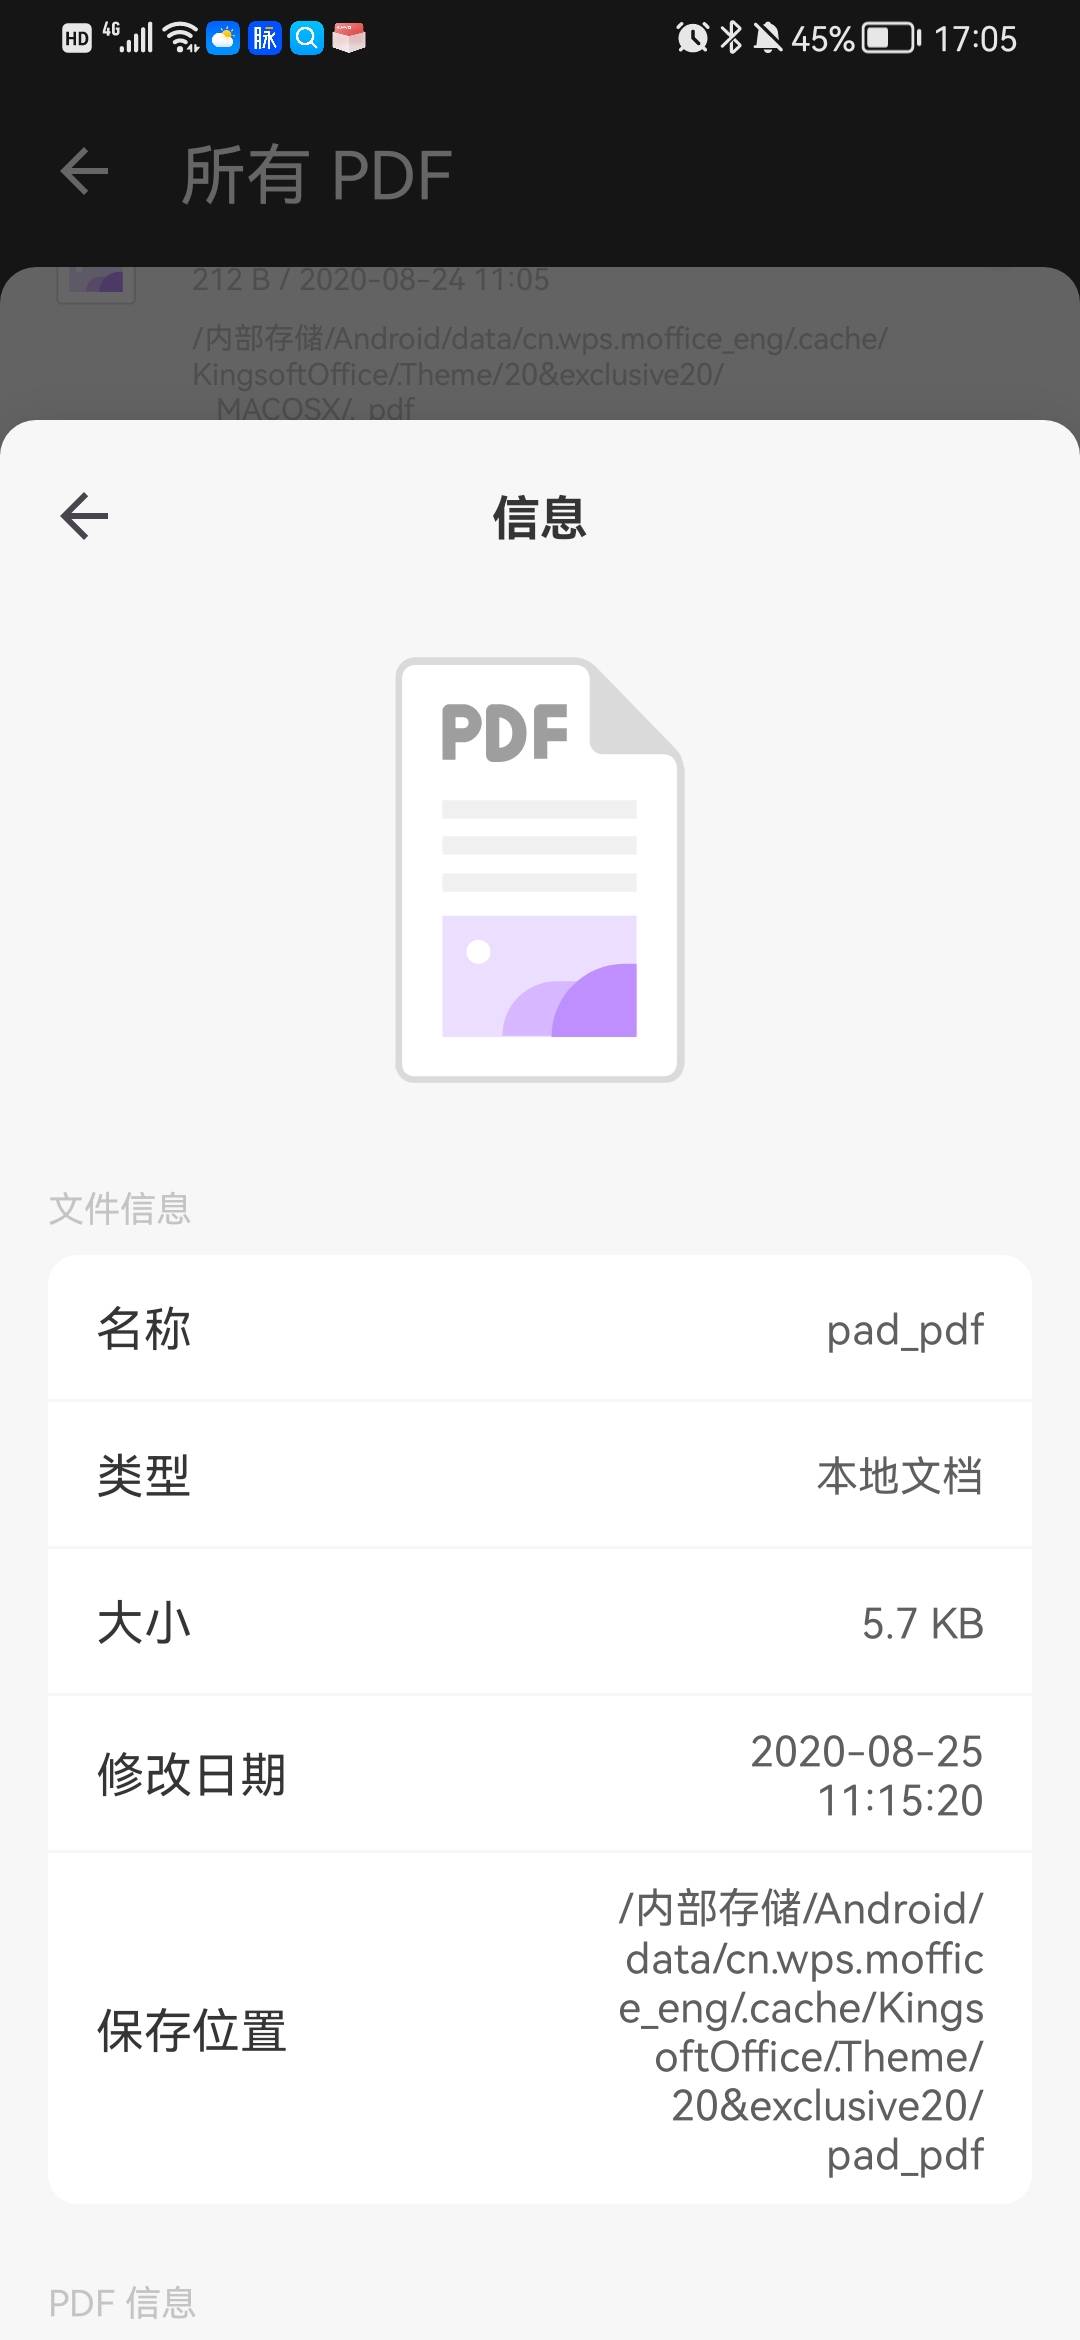 检查 pdf 文档的信息